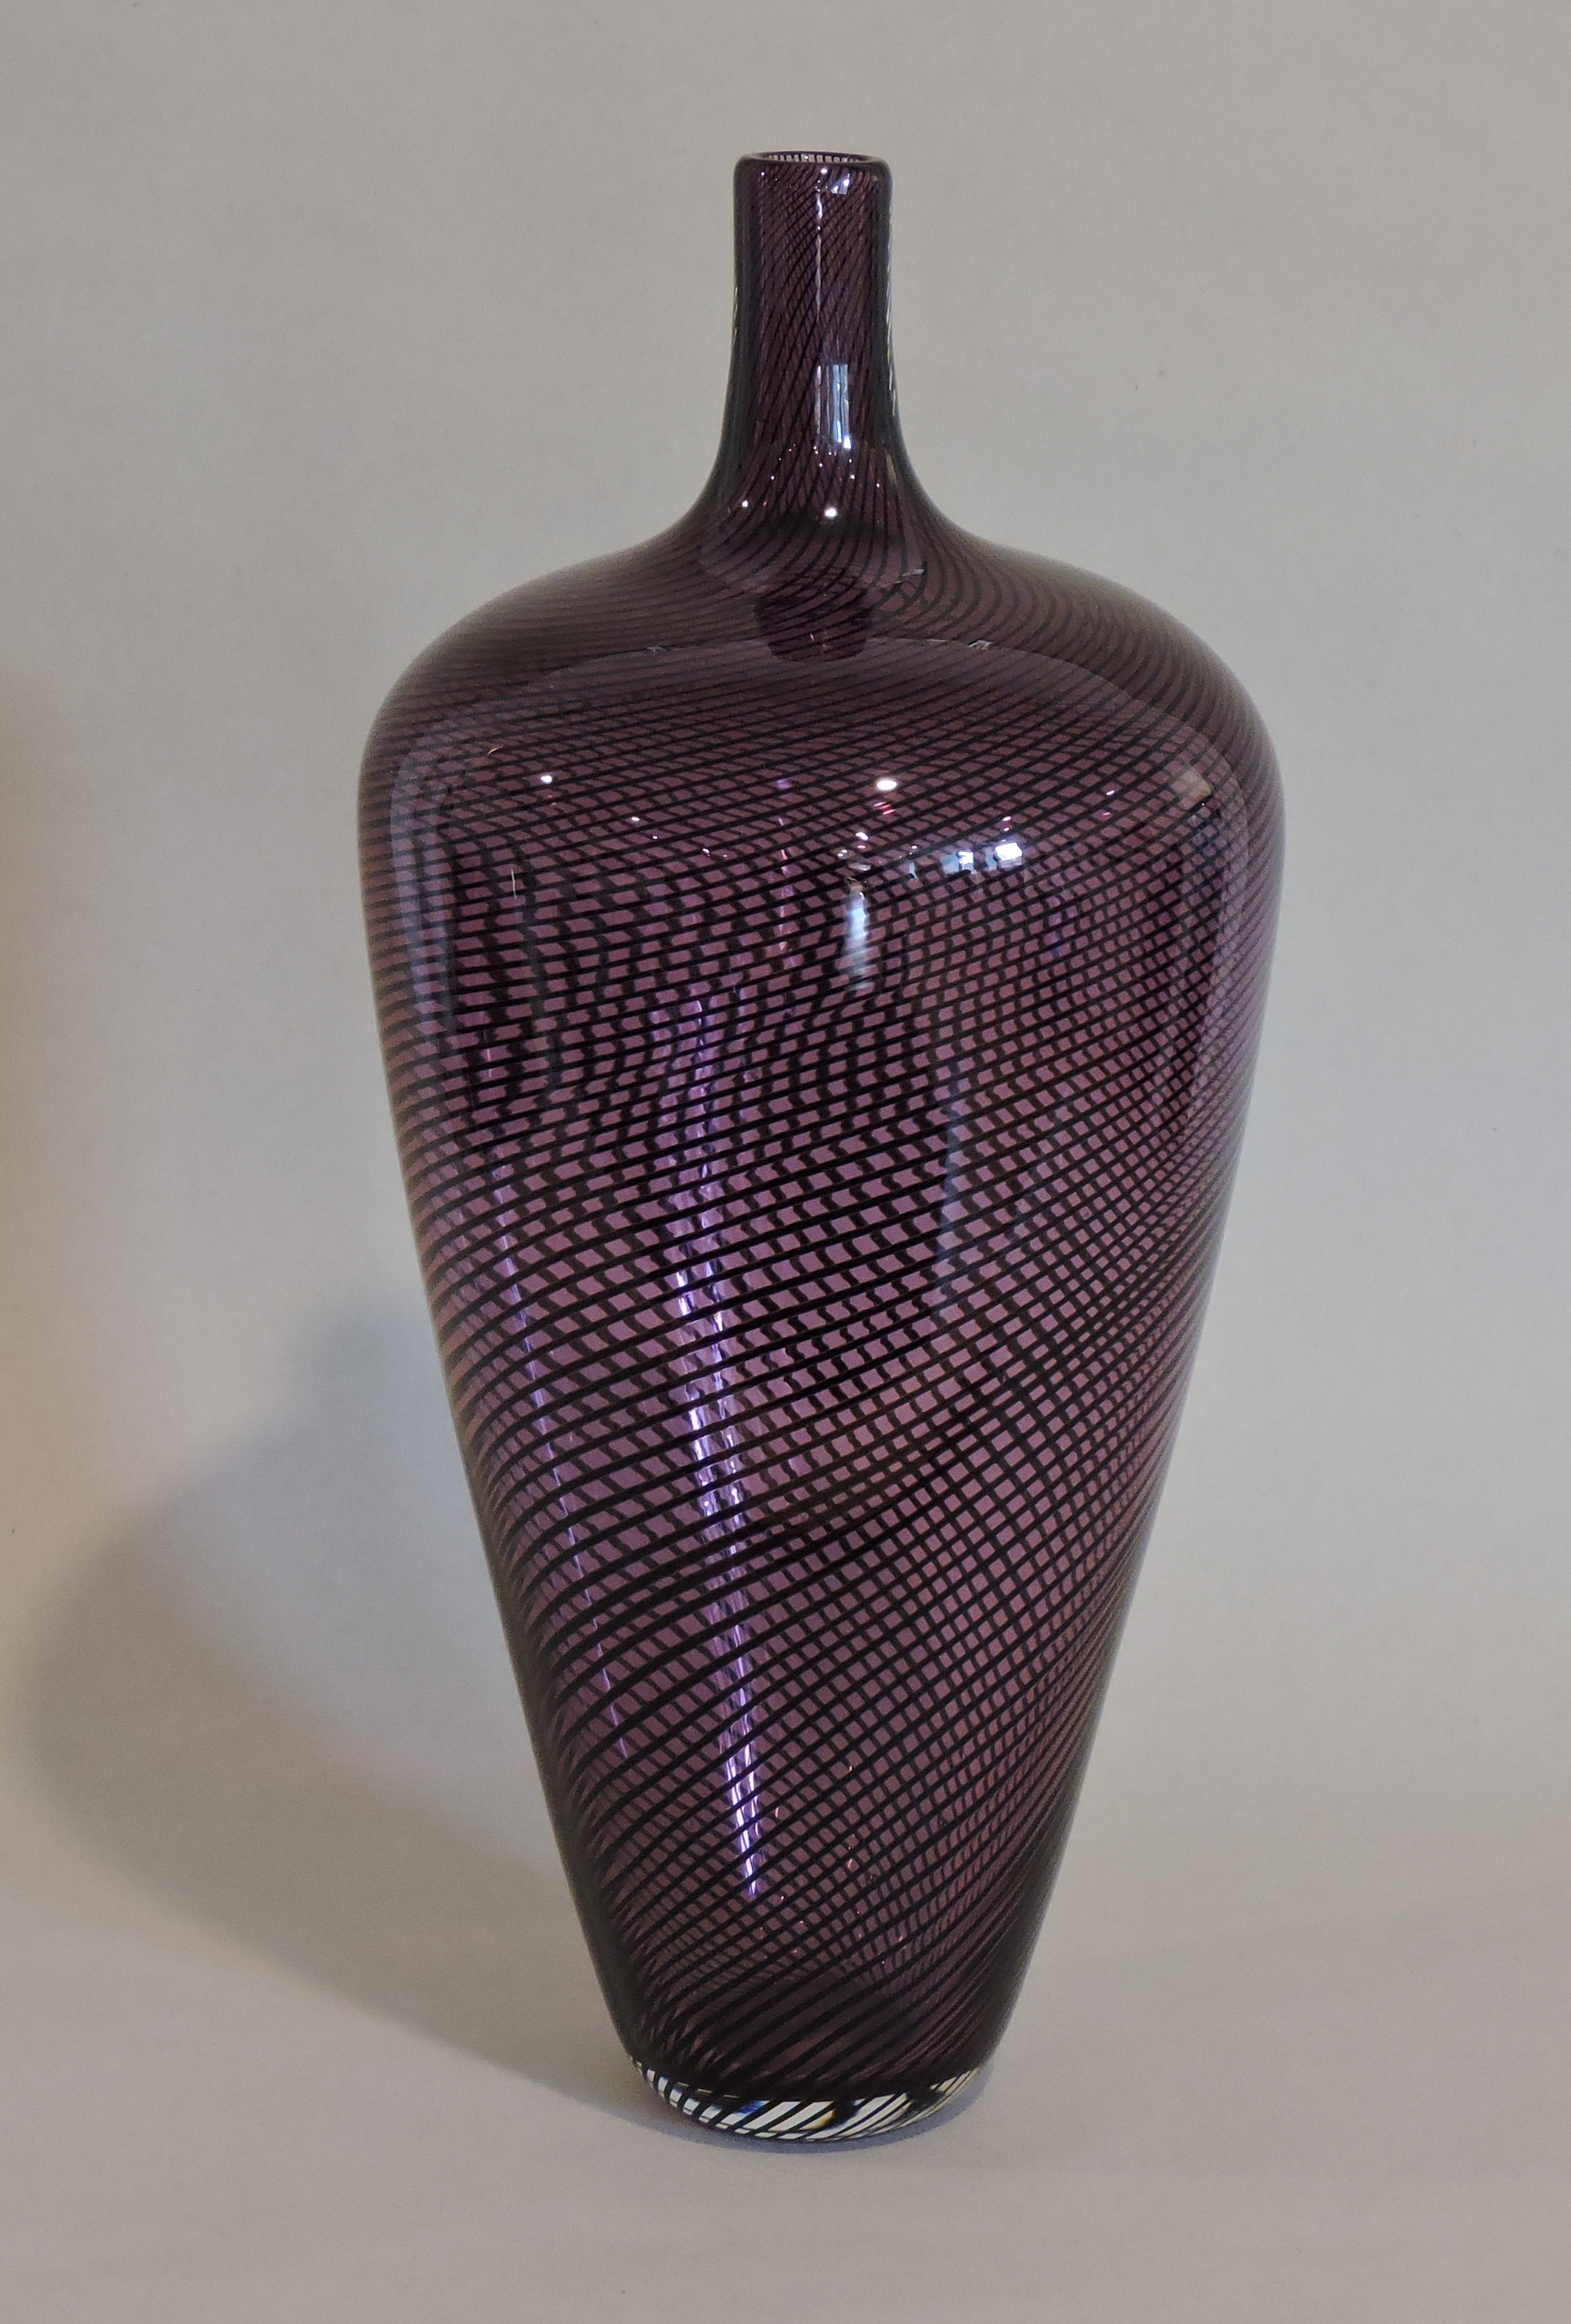 Cane Shoulder Vase by Brian Becher